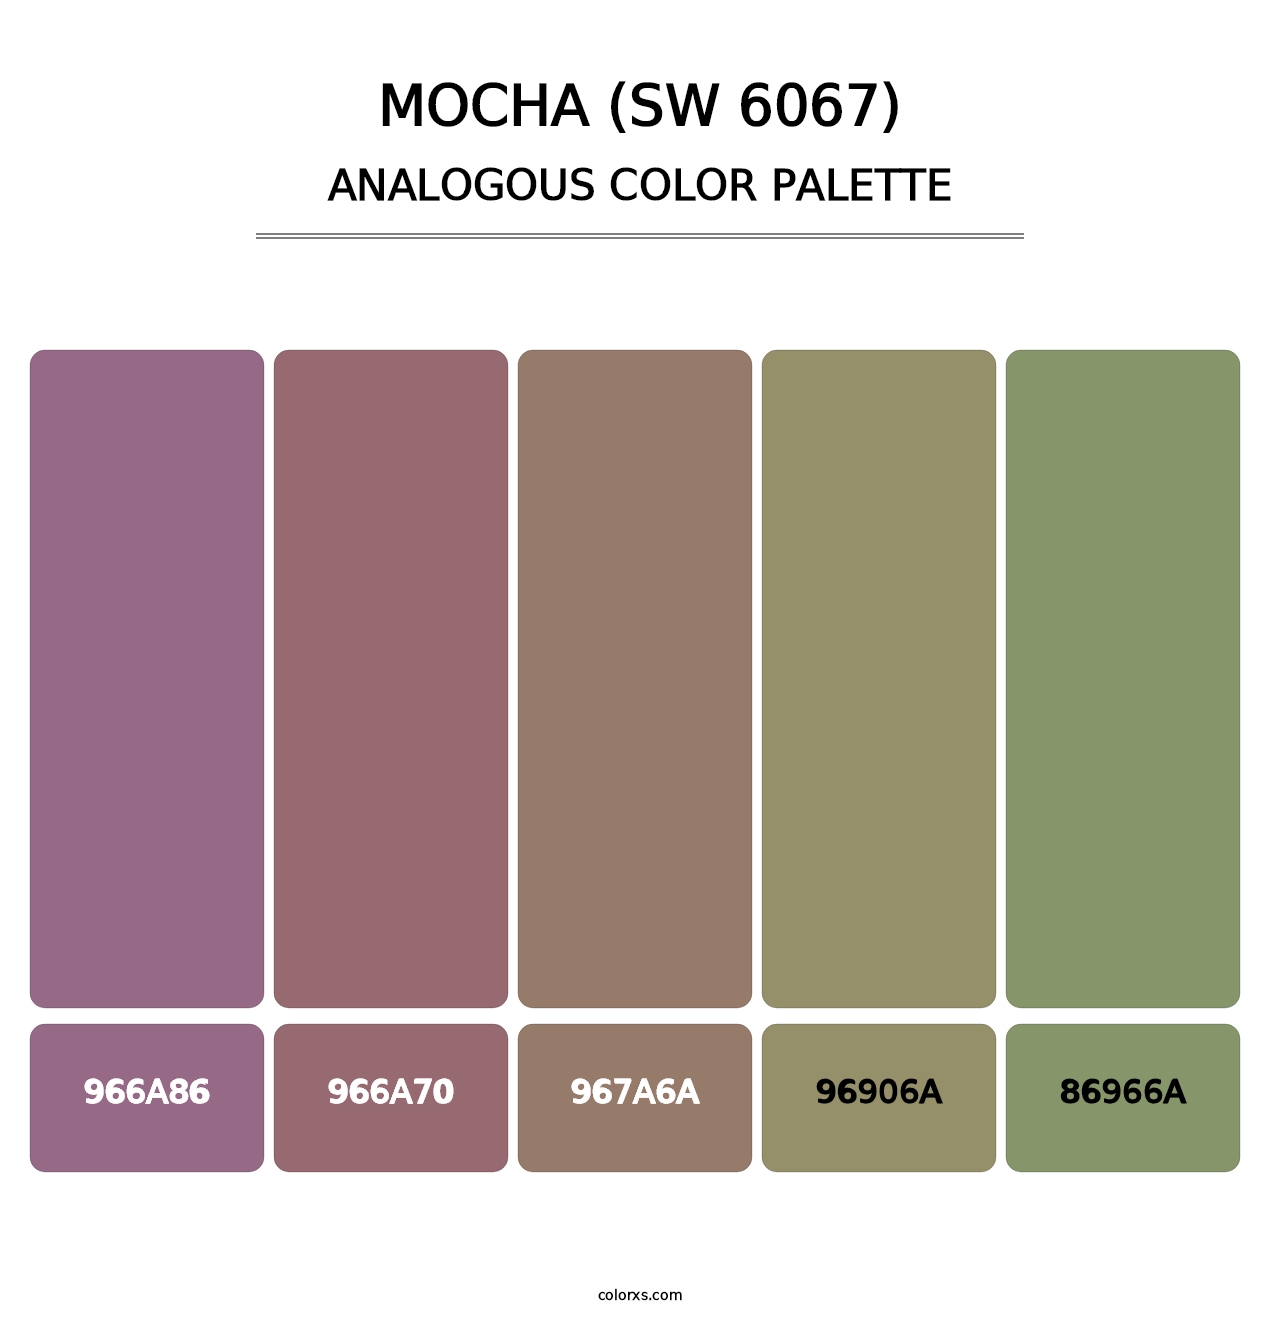 Mocha (SW 6067) - Analogous Color Palette